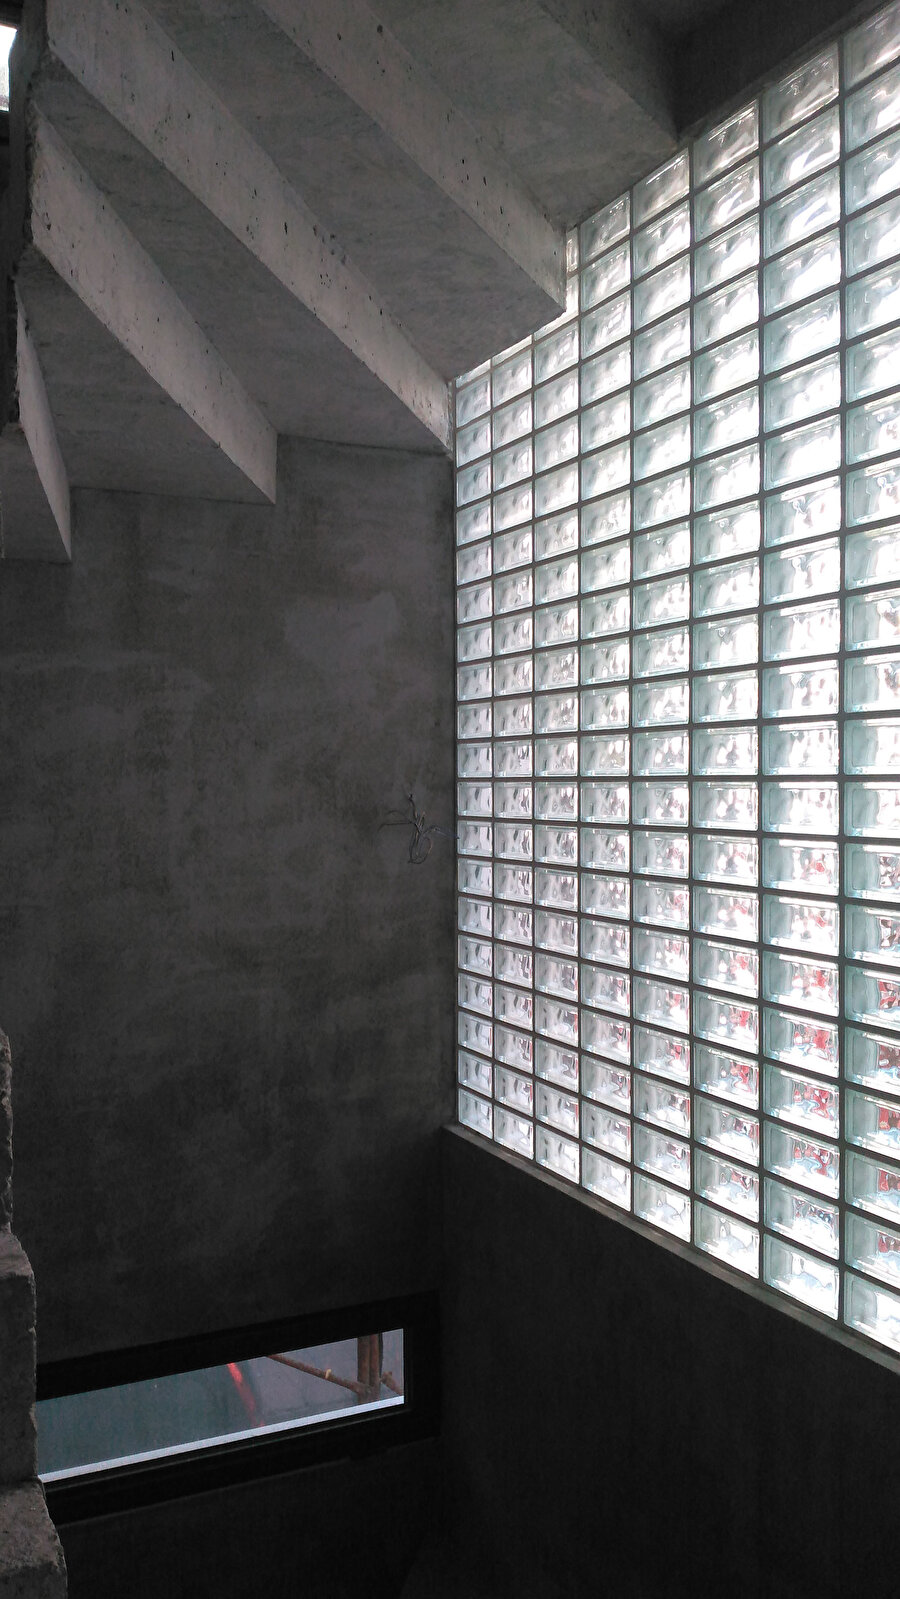 Merdivenler ilk tasarımdaki gibi cam tuğlalar kullanılarak gün ışığı ile aydınlatılıyor. 